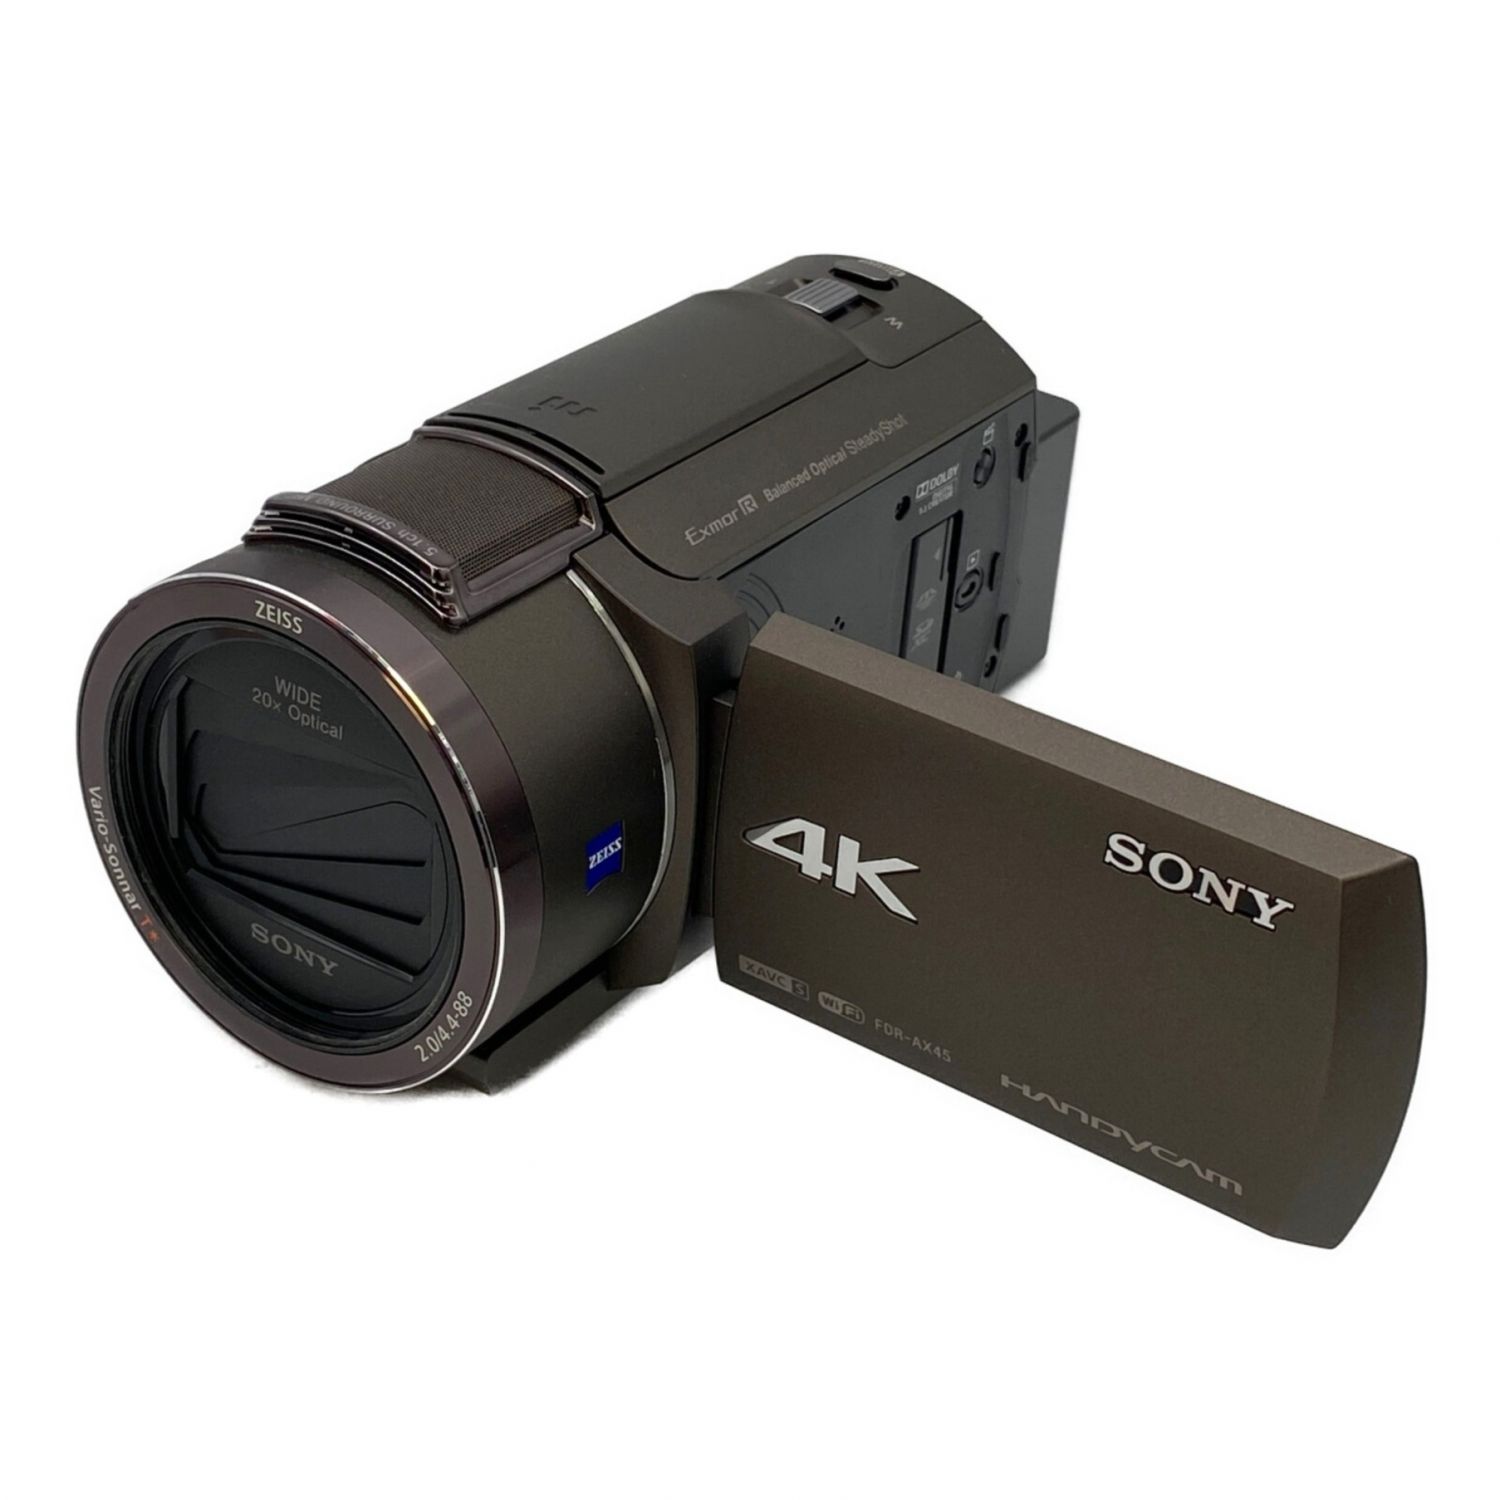 ソニー   4K   ビデオカメラ   Handycam   FDR-AX45(2018年モデル)   ブロンズブラウン   内蔵メモリー64GB   - 1